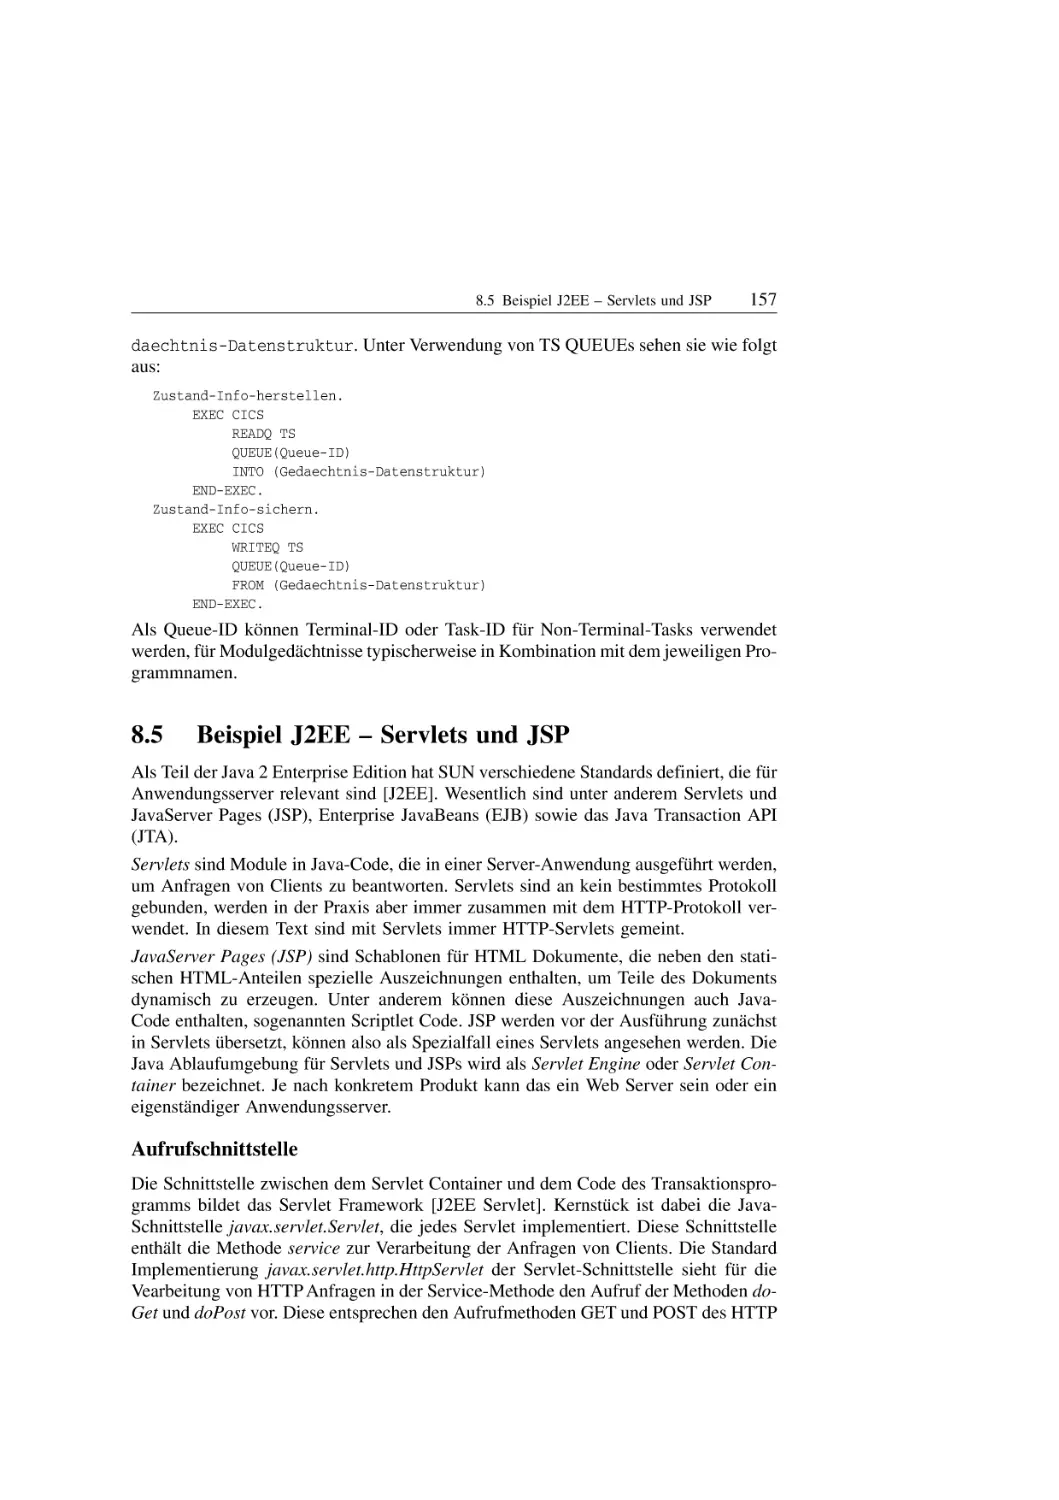 8.5 Beispiel J2EE - Servlets und JSP